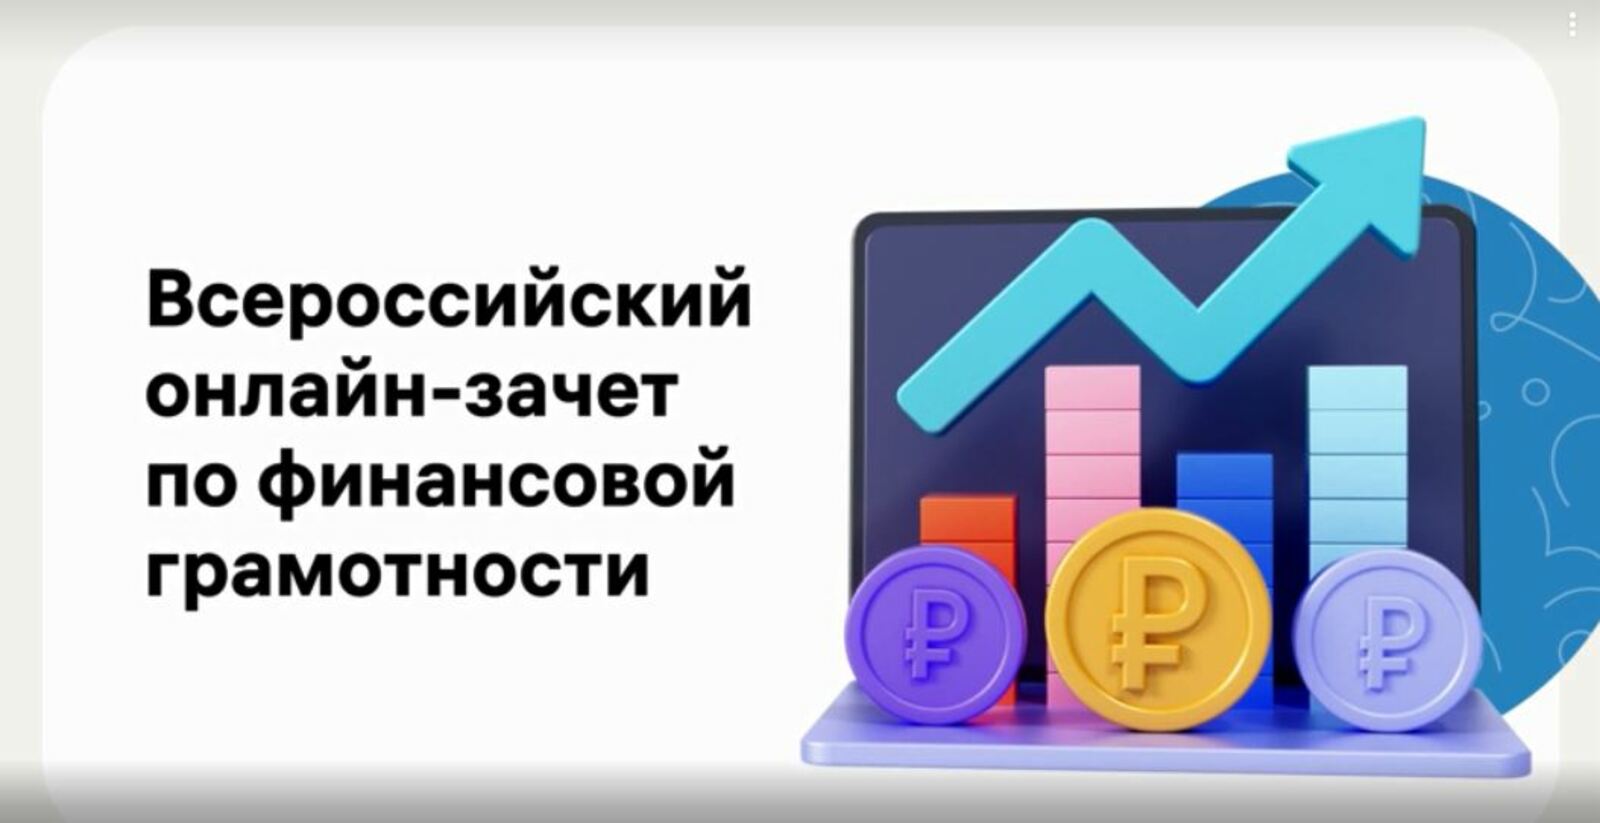 Жители Башкортостана могут сдать онлайн-зачет по финансовой грамотности и получить именной сертификат